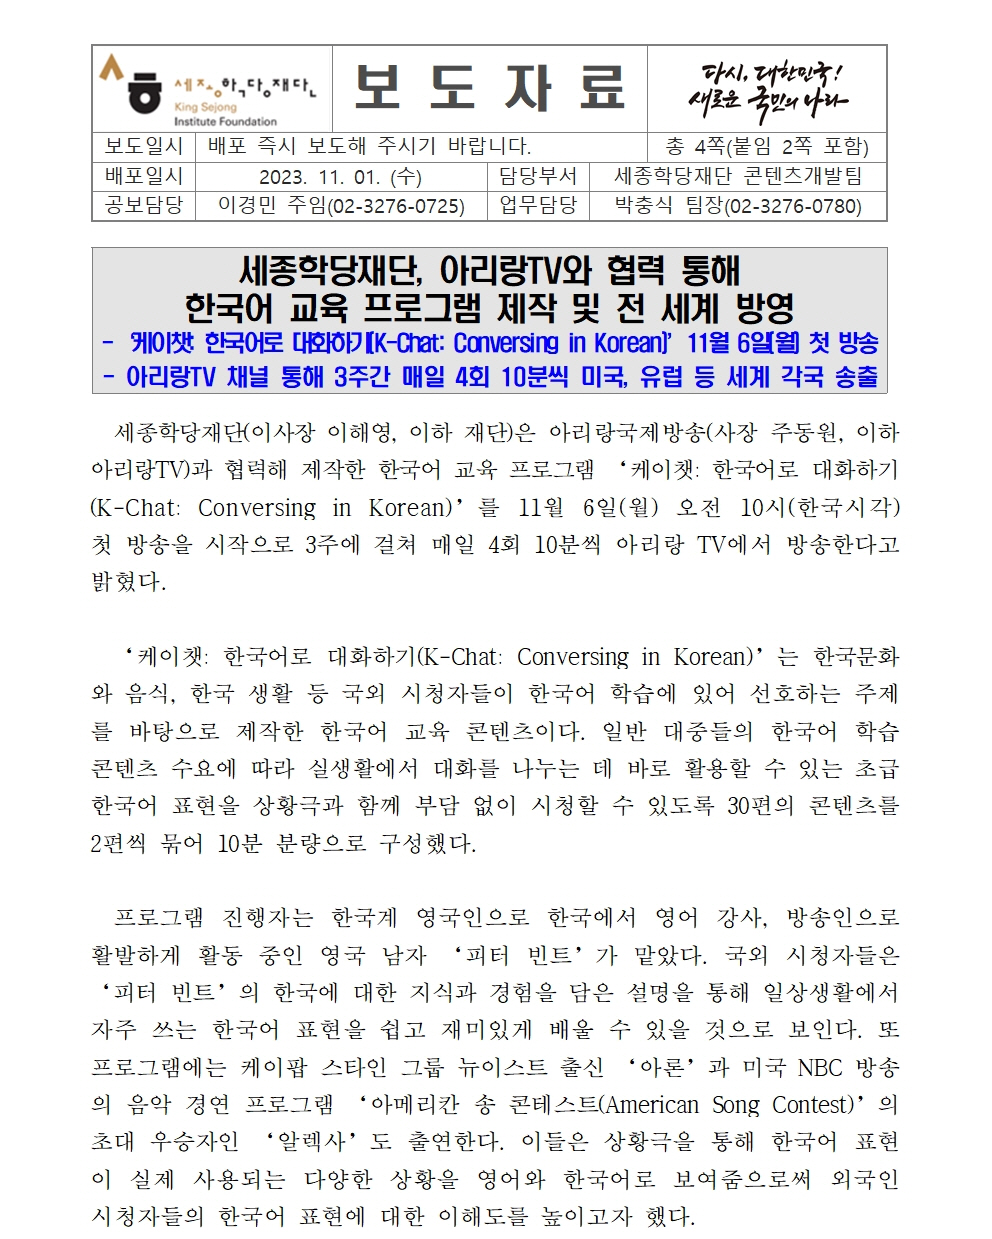 세종학당재단 아리랑TV와 한국어 교육 프로그램 제작 방영(보도자료)001